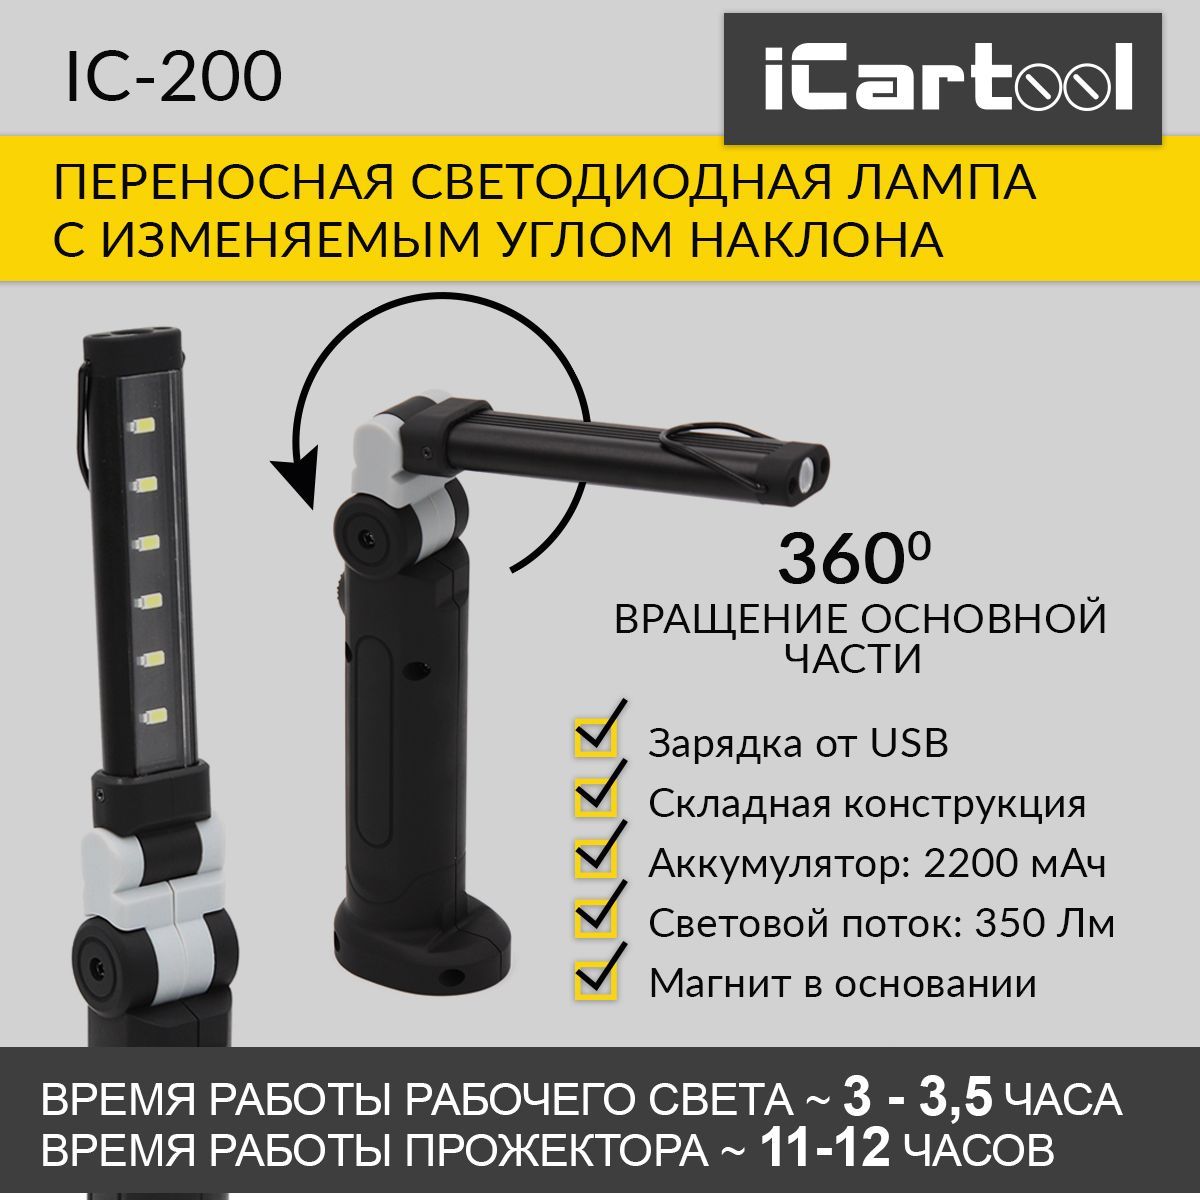 Переносная светодиодная лампа с изменяемым углом наклона iCartool IC-200 насадка кусторез makita em420mp 25 см регулируемый угол наклона 198063 9